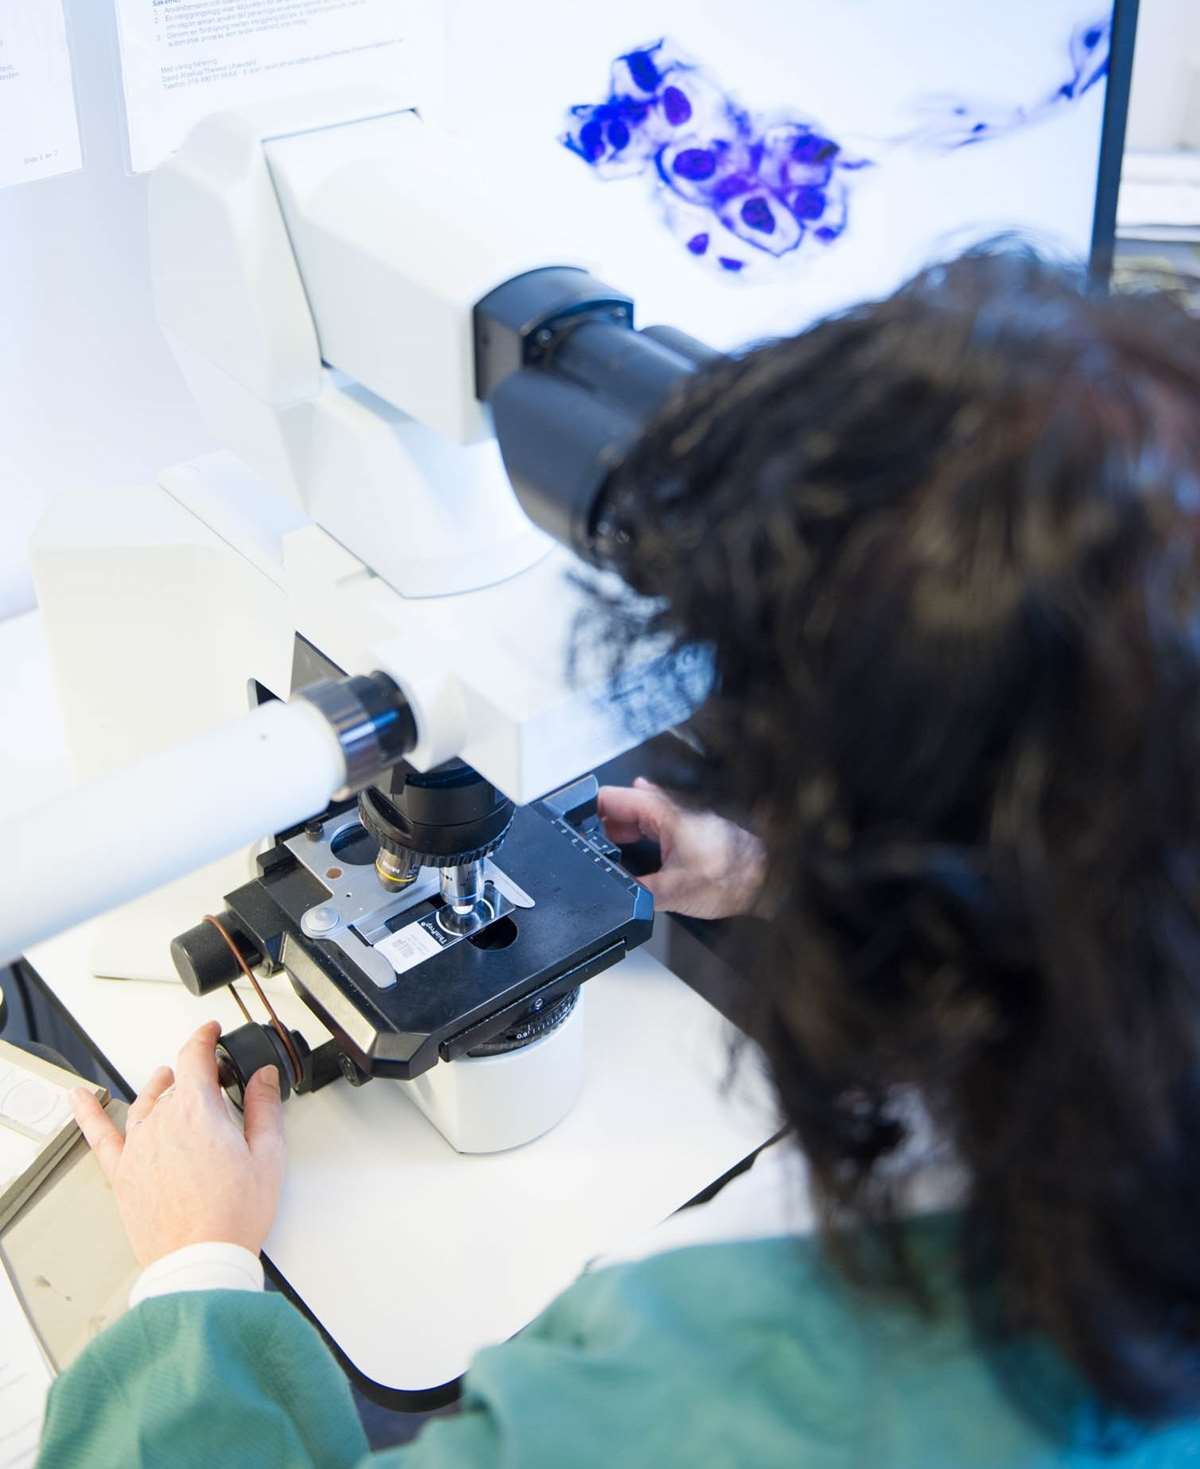 Mikroskopering av celleprøver